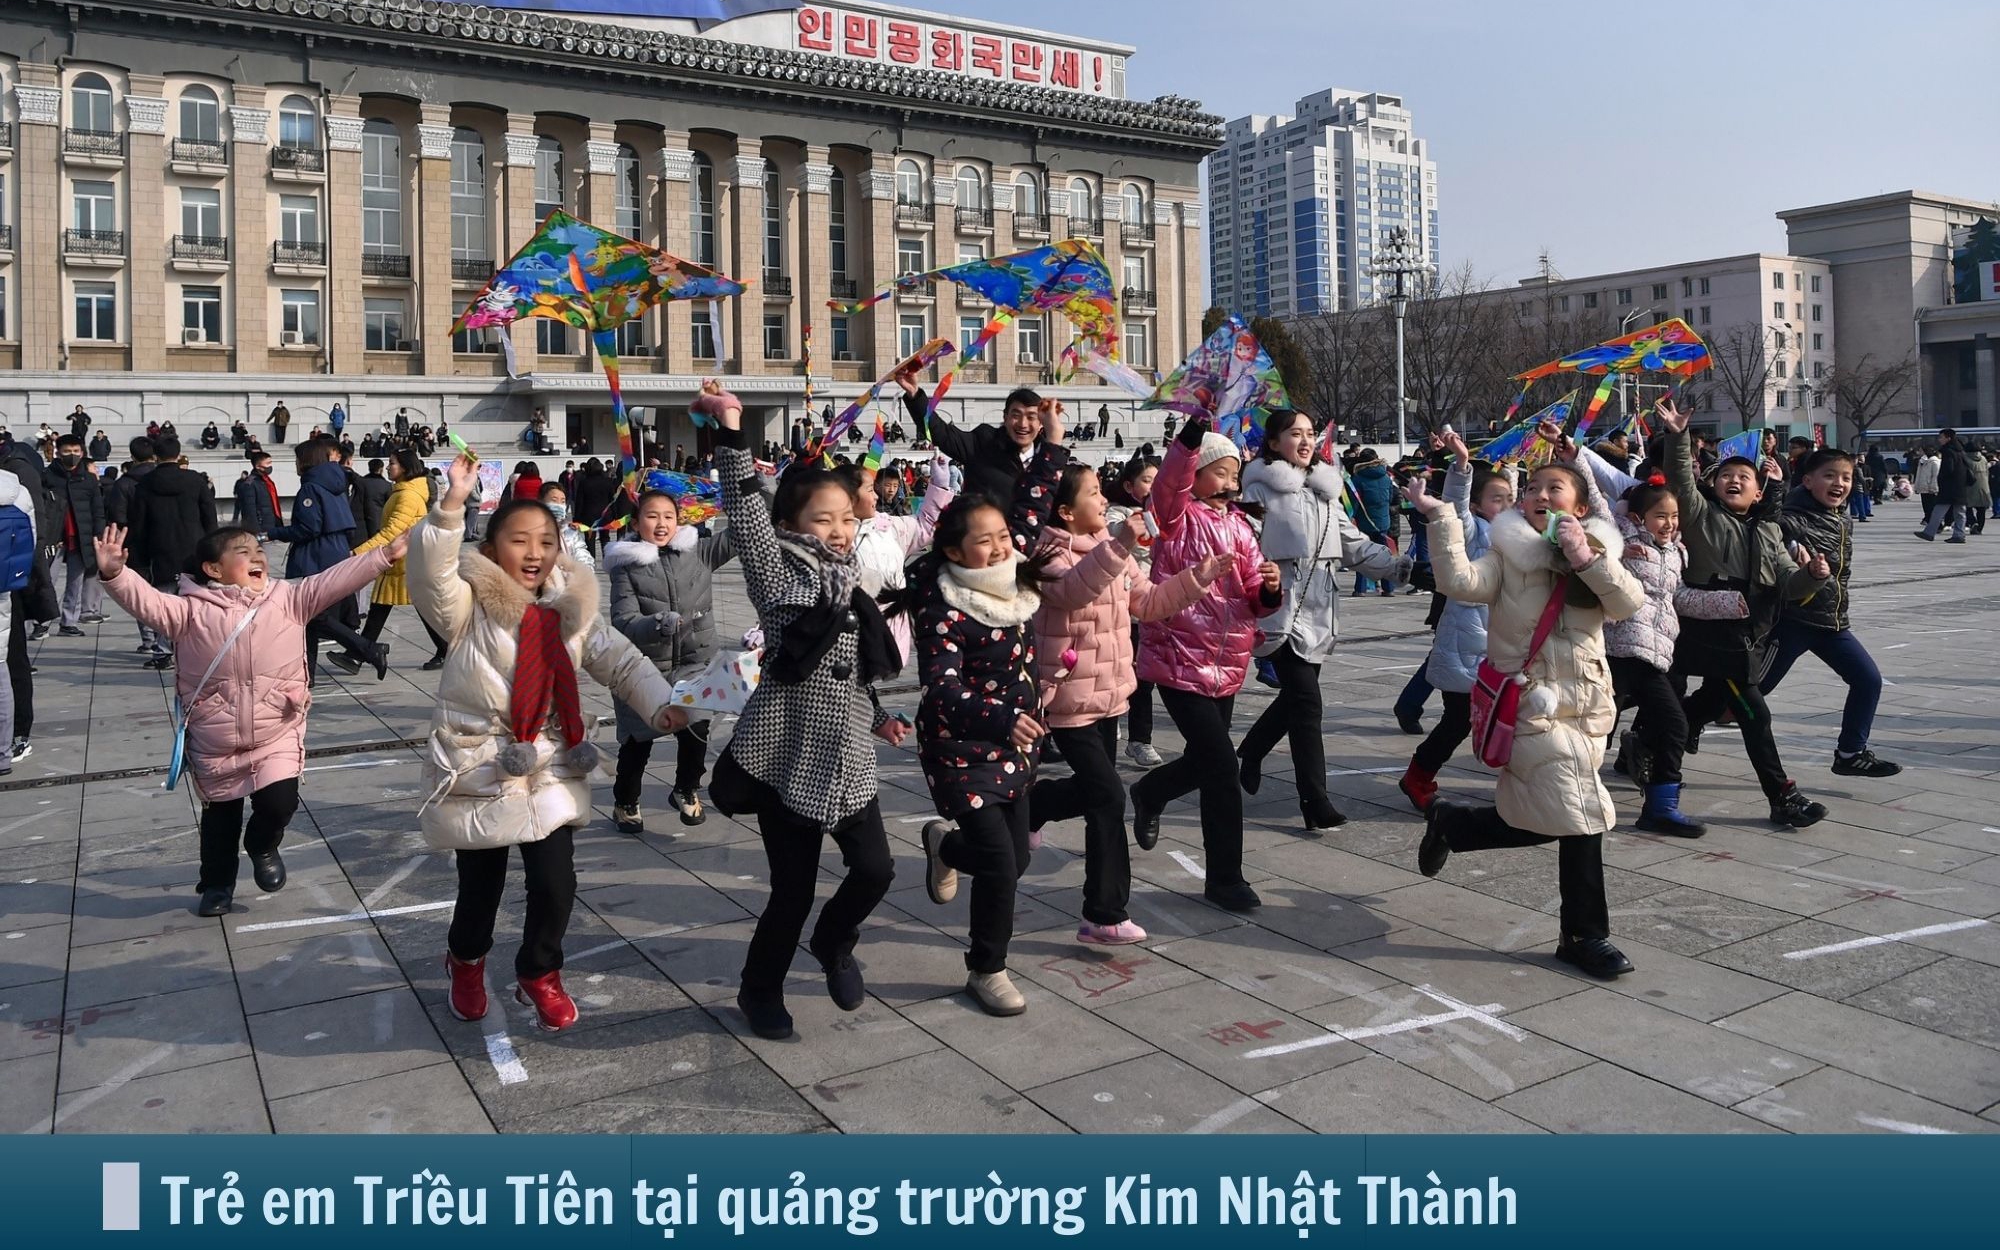 Hình ảnh báo chí 24h: Người Triều Tiên vui chơi ngày Tết Nguyên đán